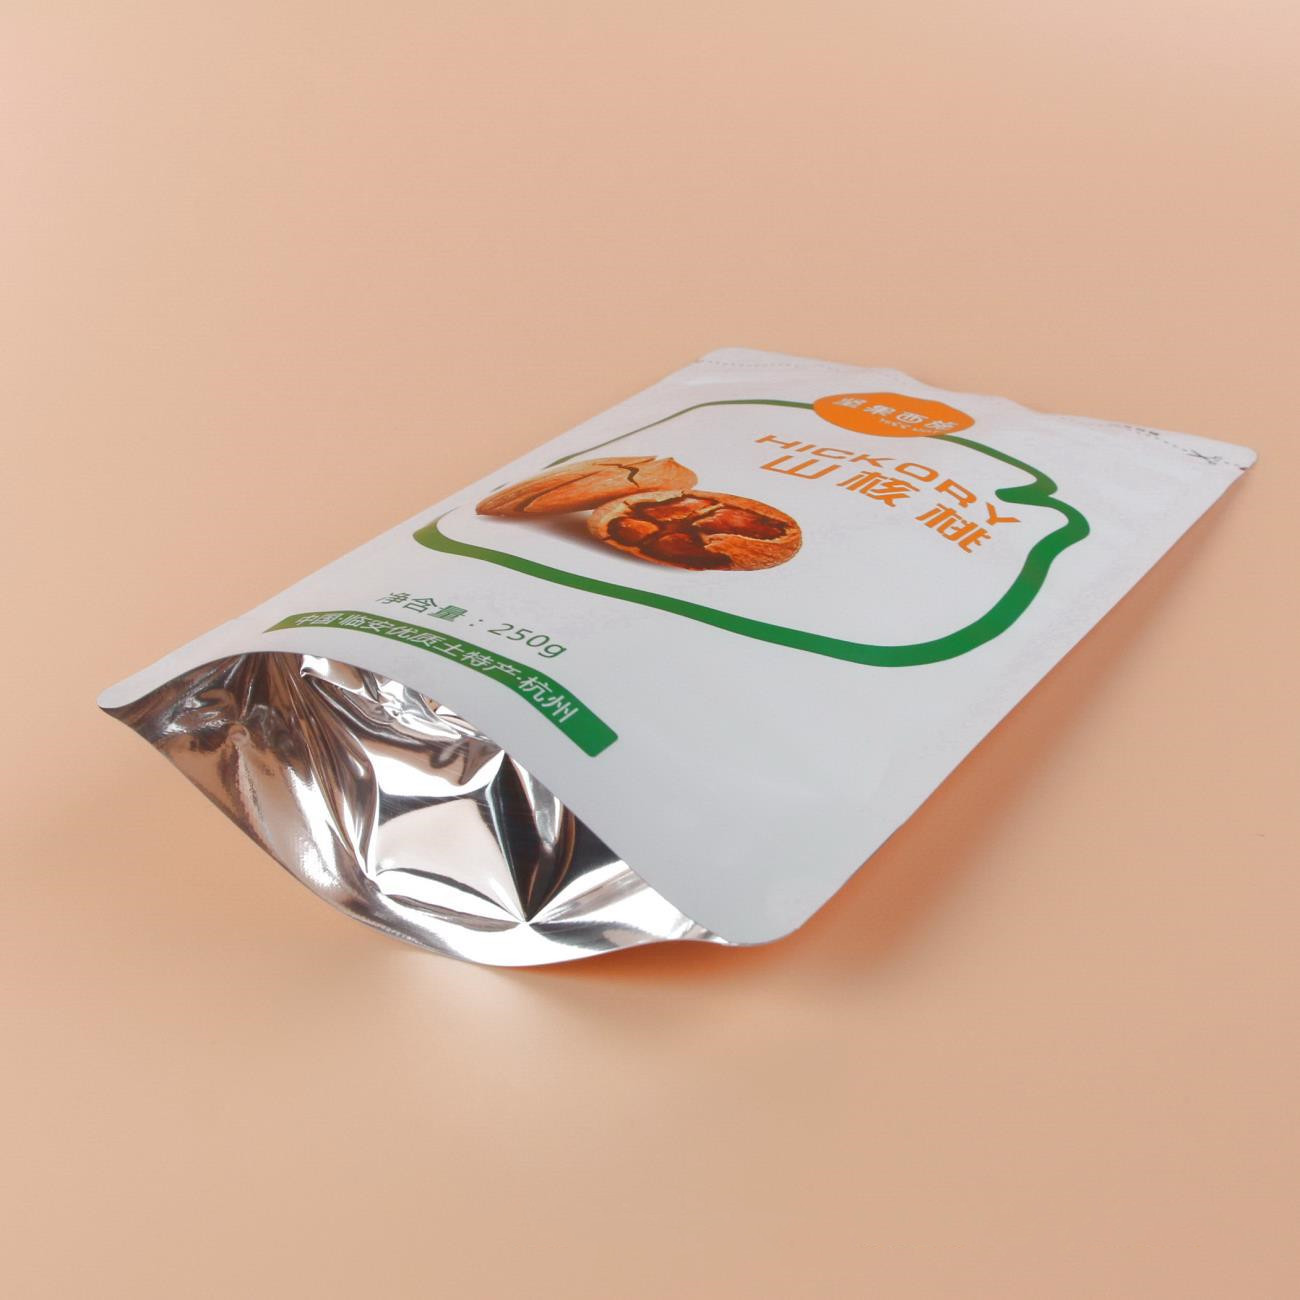 Self-sealing Food And Zipper Plastic Bag For Pecan 9